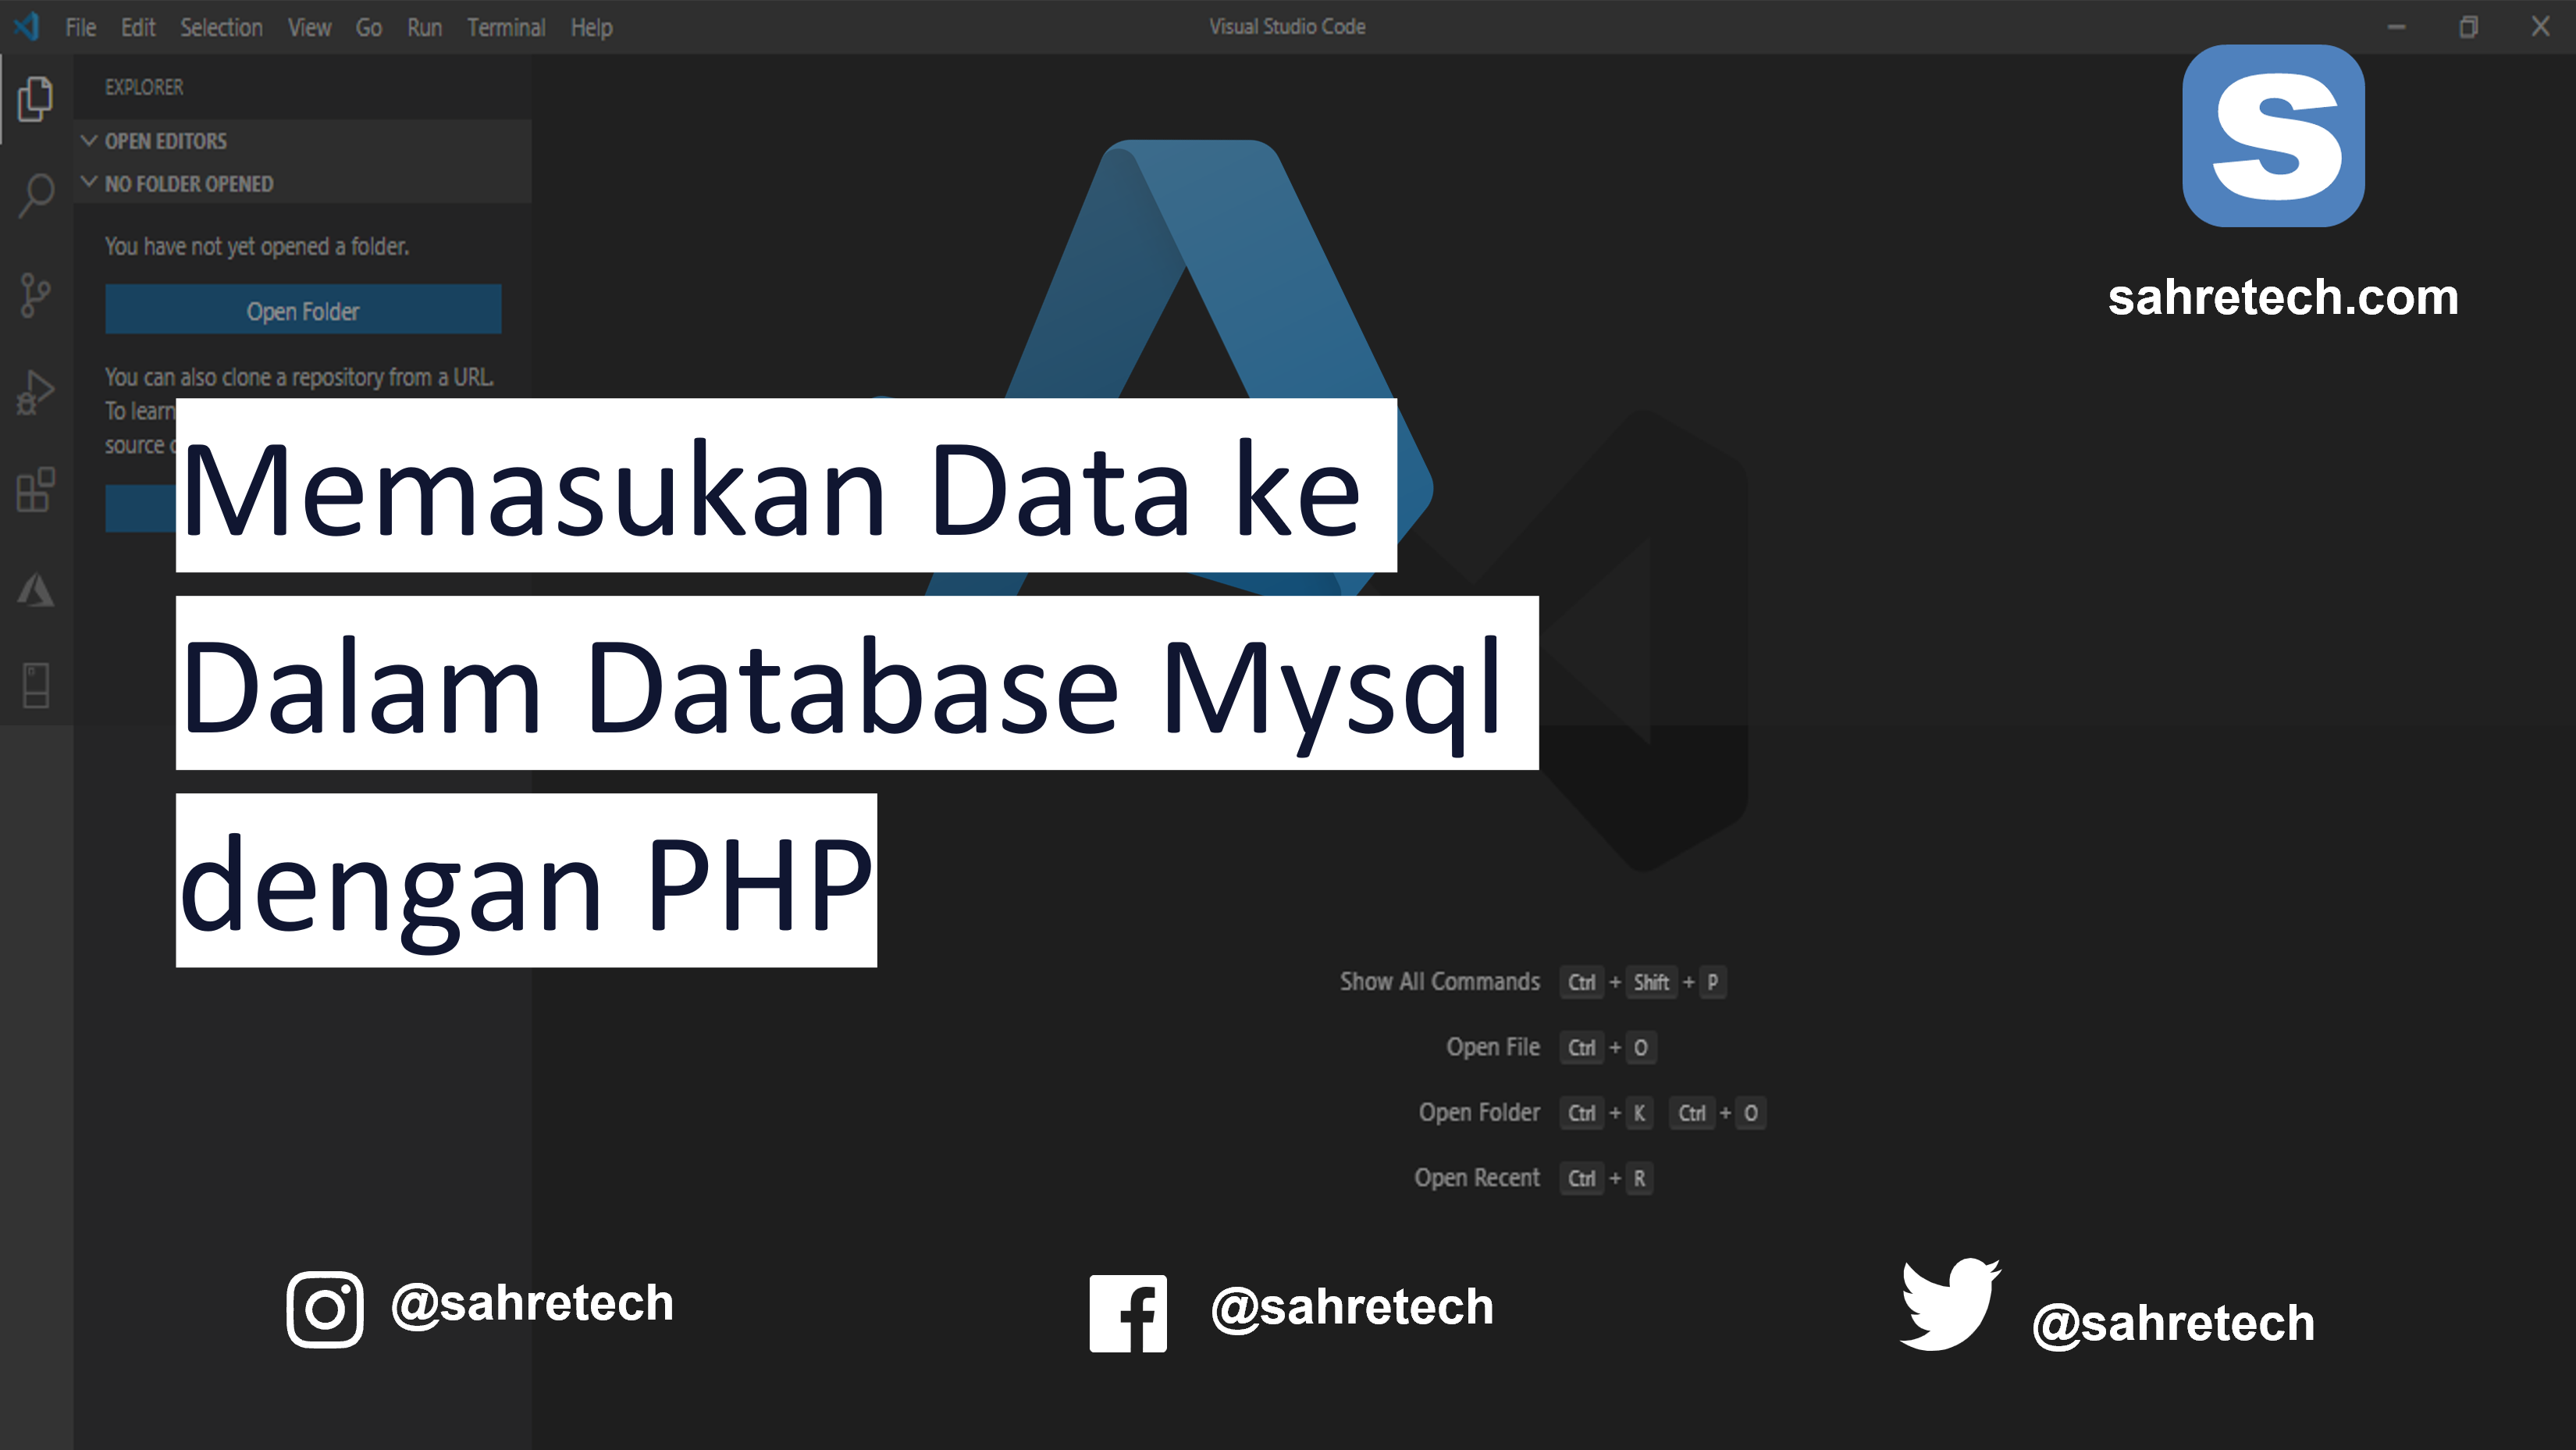 Memasukan Data ke Dalam Database Mysql dengan PHP